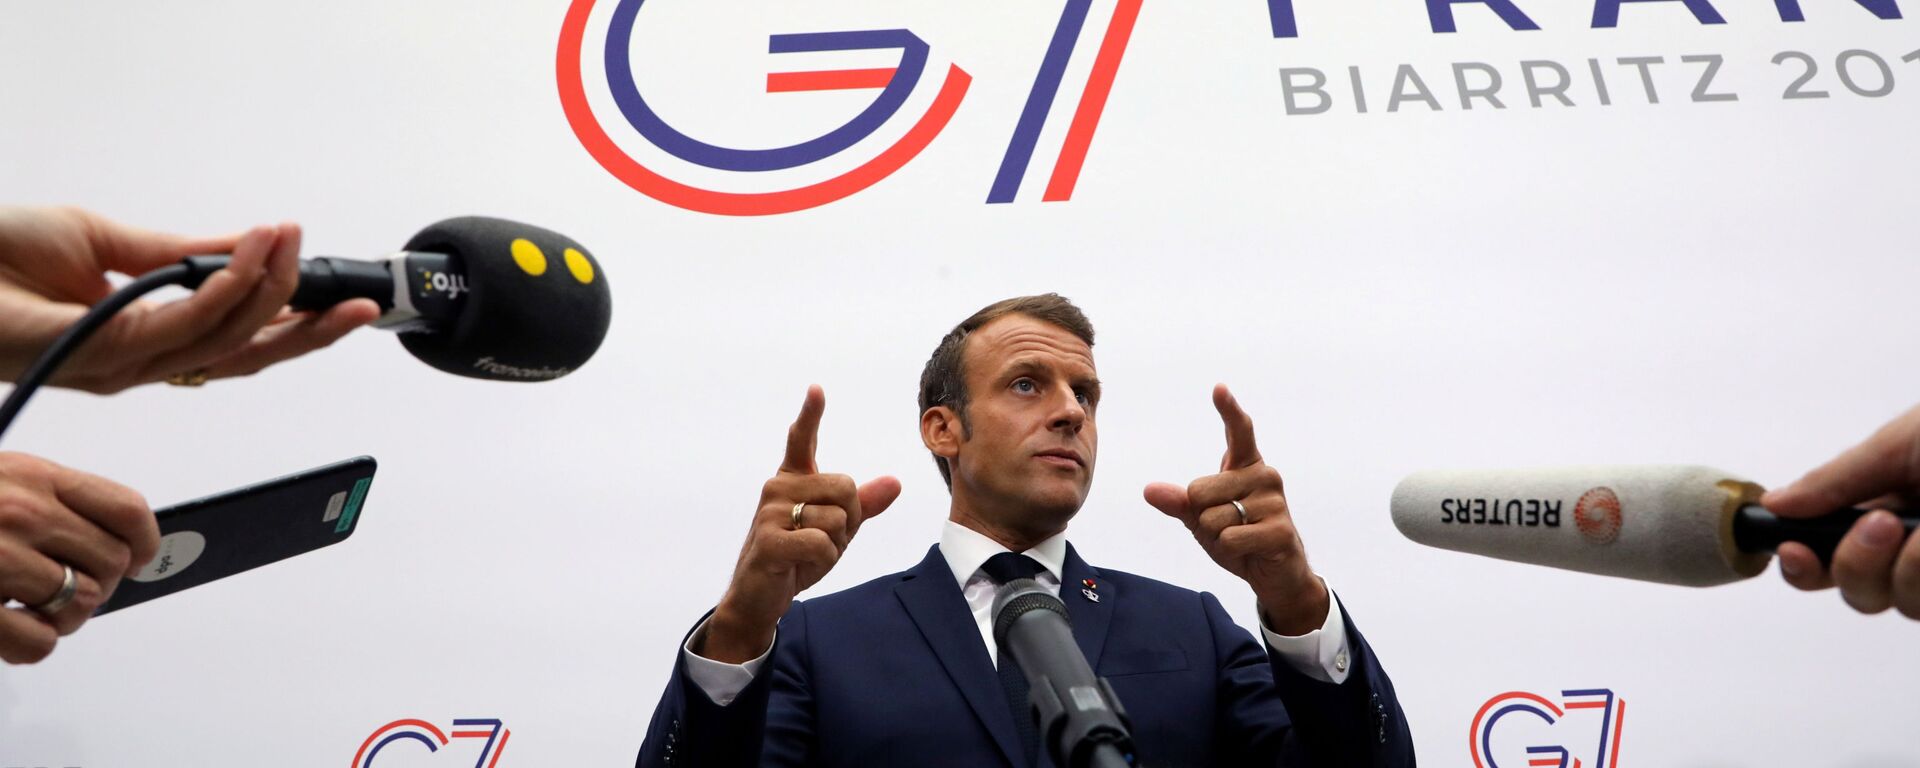 Presidente francês Emmanuel Macron gesticula ao falar à imprensa após uma sessão plenária no centro de Bellevue, em Biarritz, França, 25 de agosto de 2019 - Sputnik Brasil, 1920, 09.09.2019